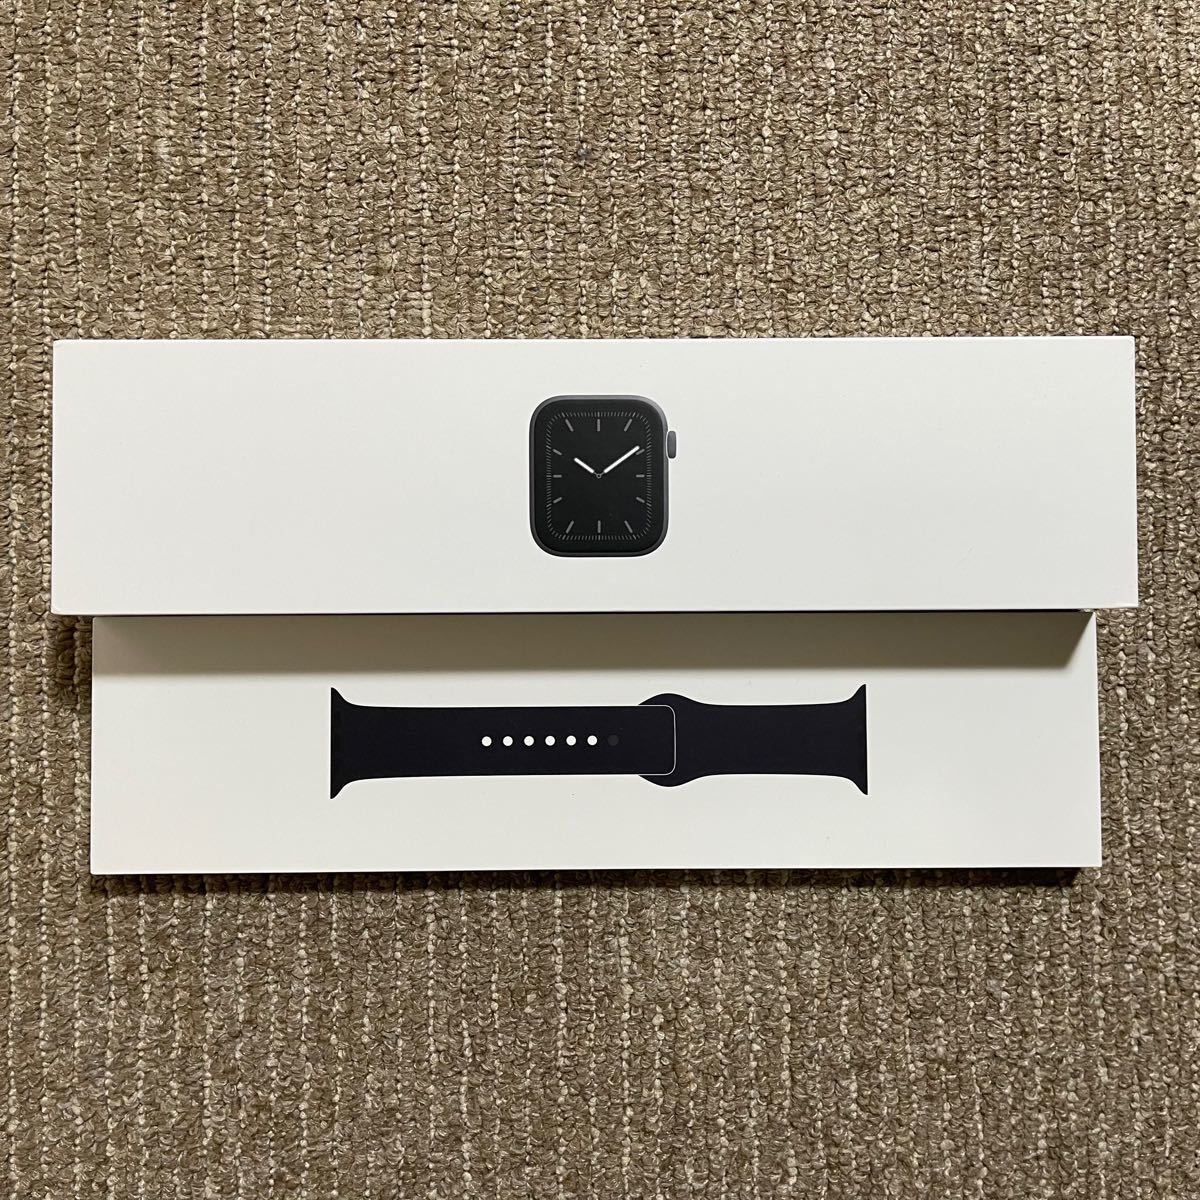 一番人気物Apple Watch Series 5 GPS＋Cellular モデル 40mm スペースグレイアルミニウム スマートウォッチ本体  スマートウォッチ、ウェアラブル端末 スマホ、タブレット、パソコン￥17,612-www.firefreeze.com